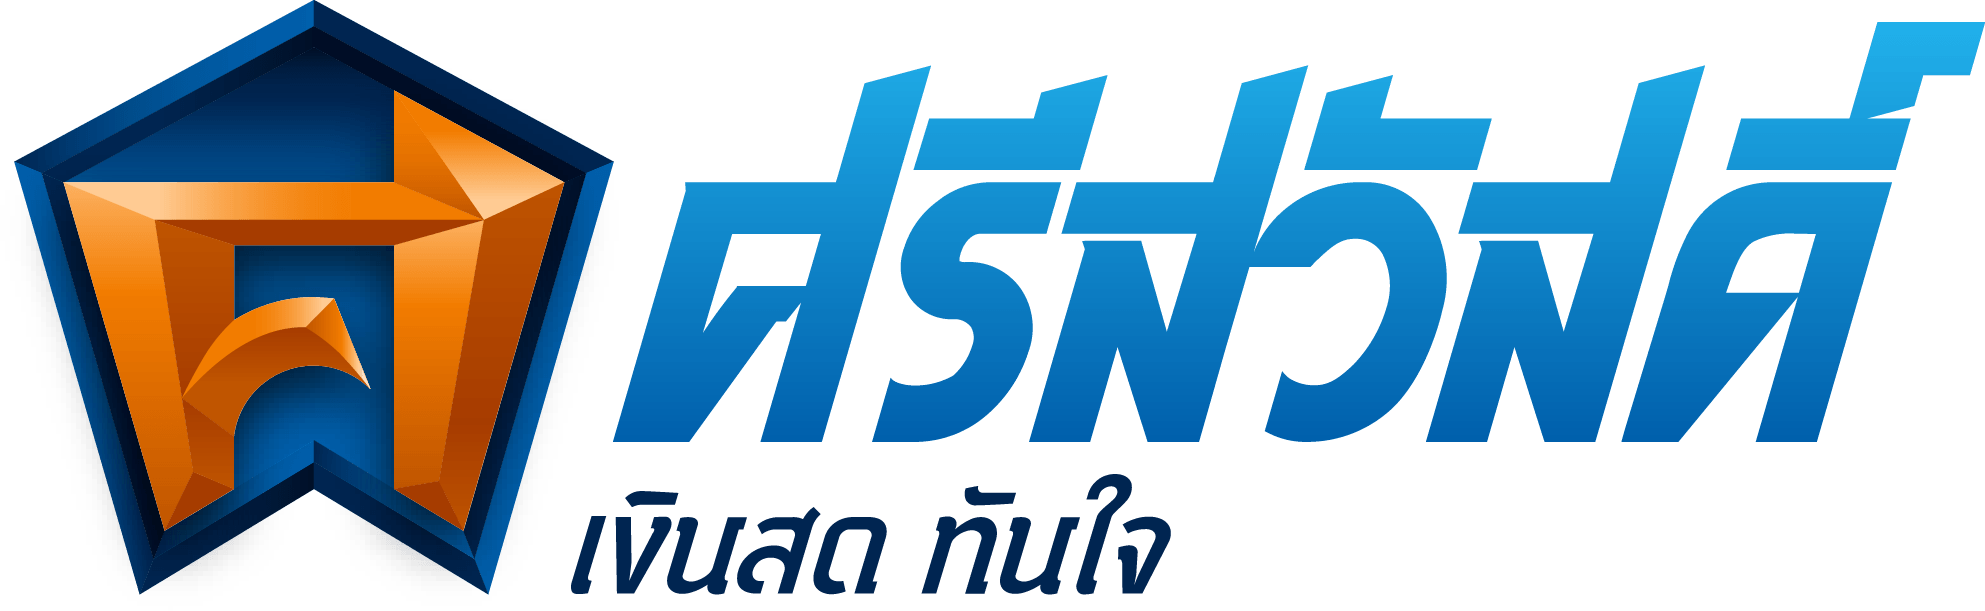 Srisawad Corporation logo large (transparent PNG)